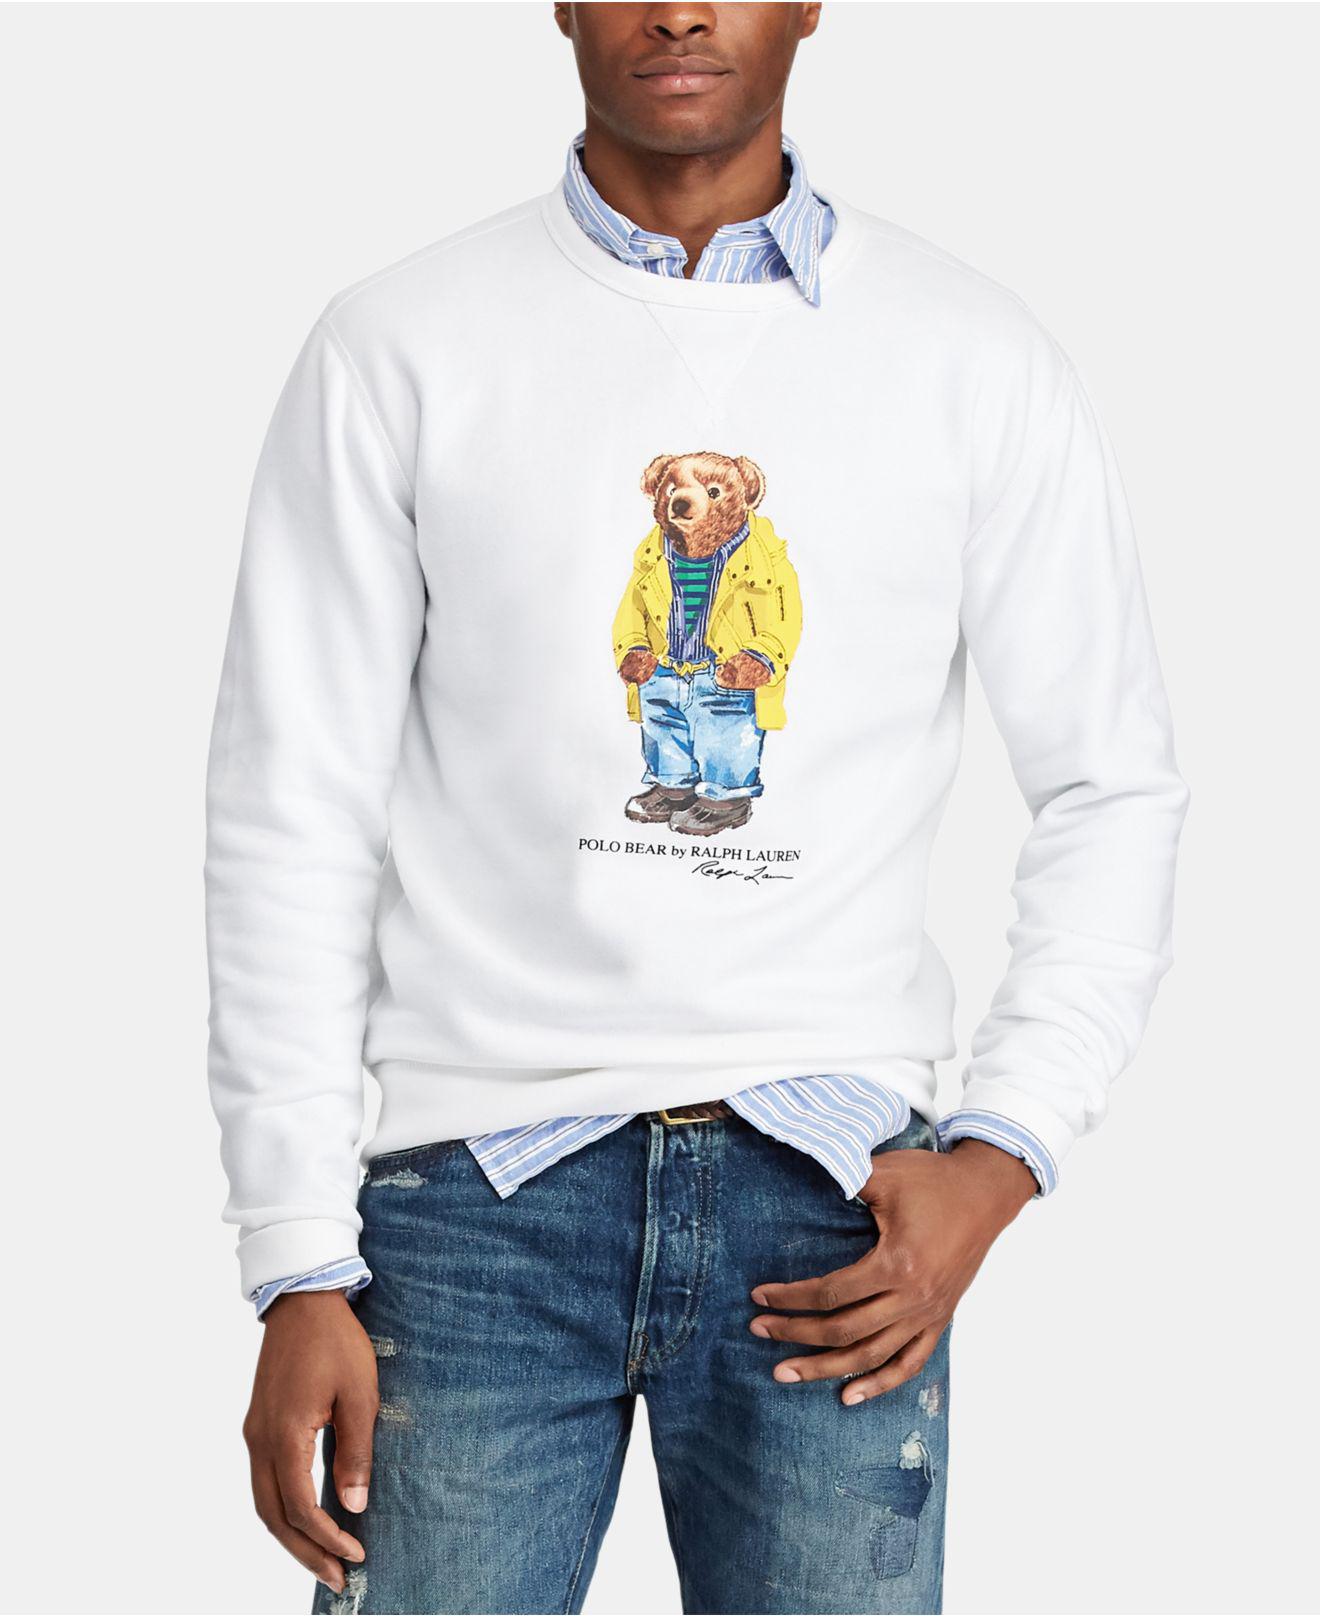 Polo Ralph Lauren Polo Bear Fleece Sweatshirt in White for Men - Lyst